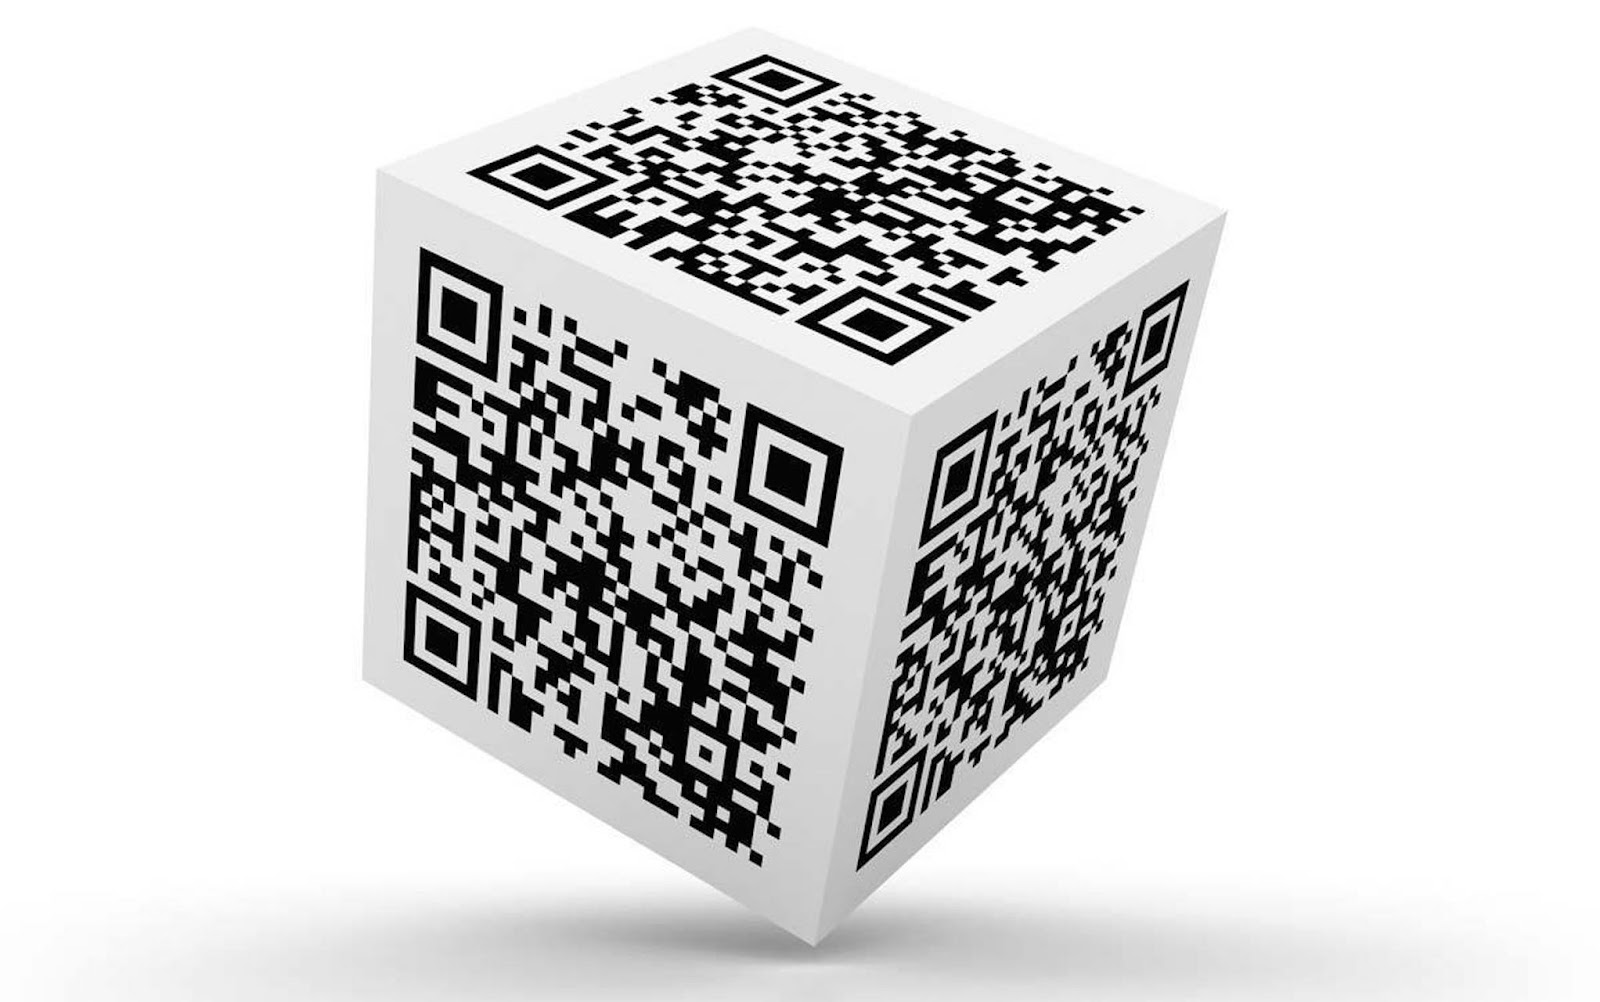 Qr код куба. Генератор кьюар кода. Куб с QR кодом. Изображение QR кода. Объемный QR код.